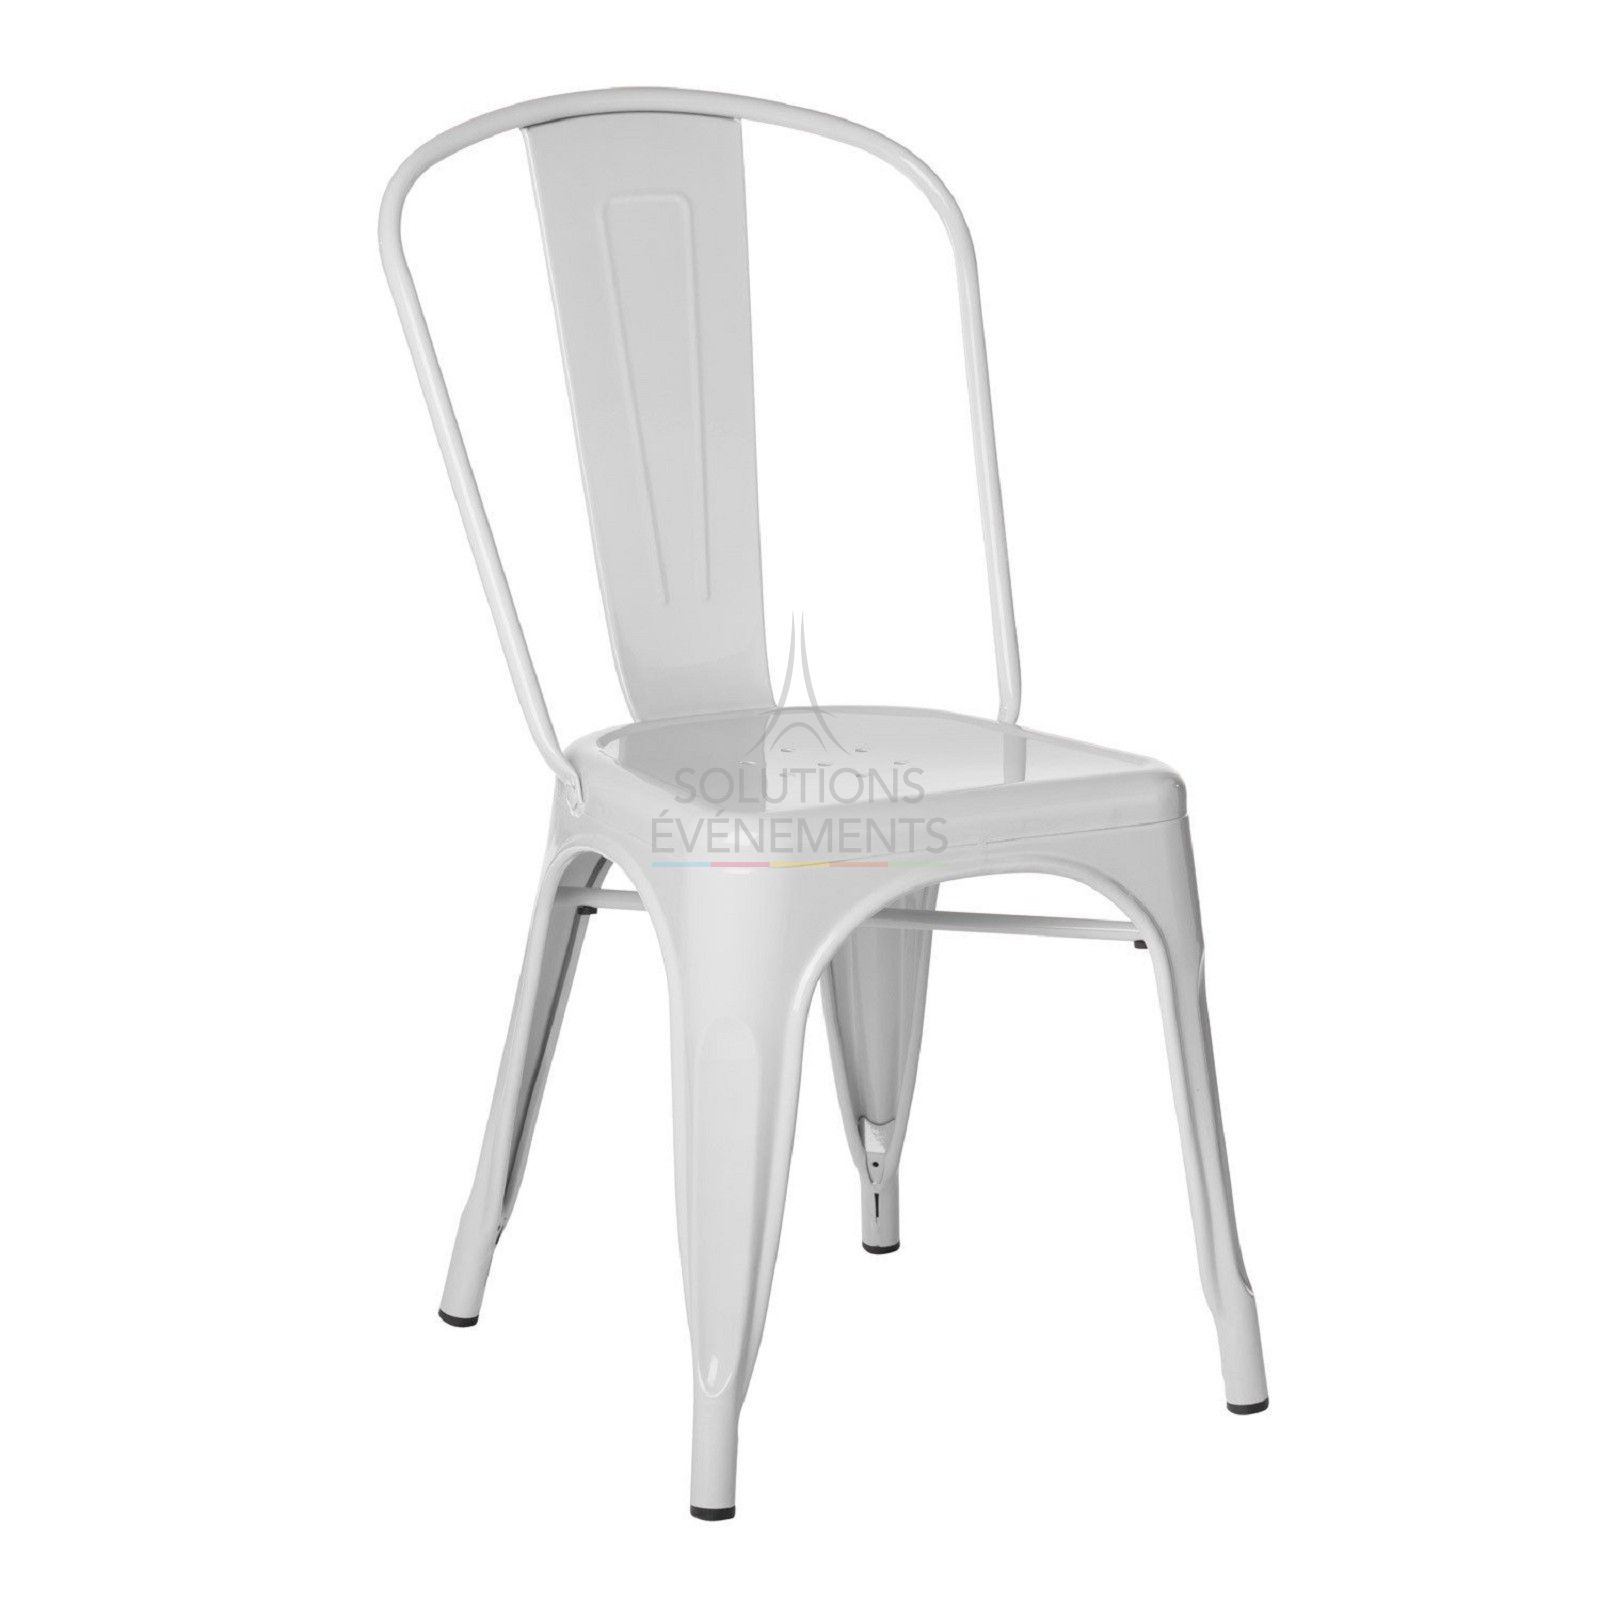 Location de chaise industrielle en métal de couleur blanche